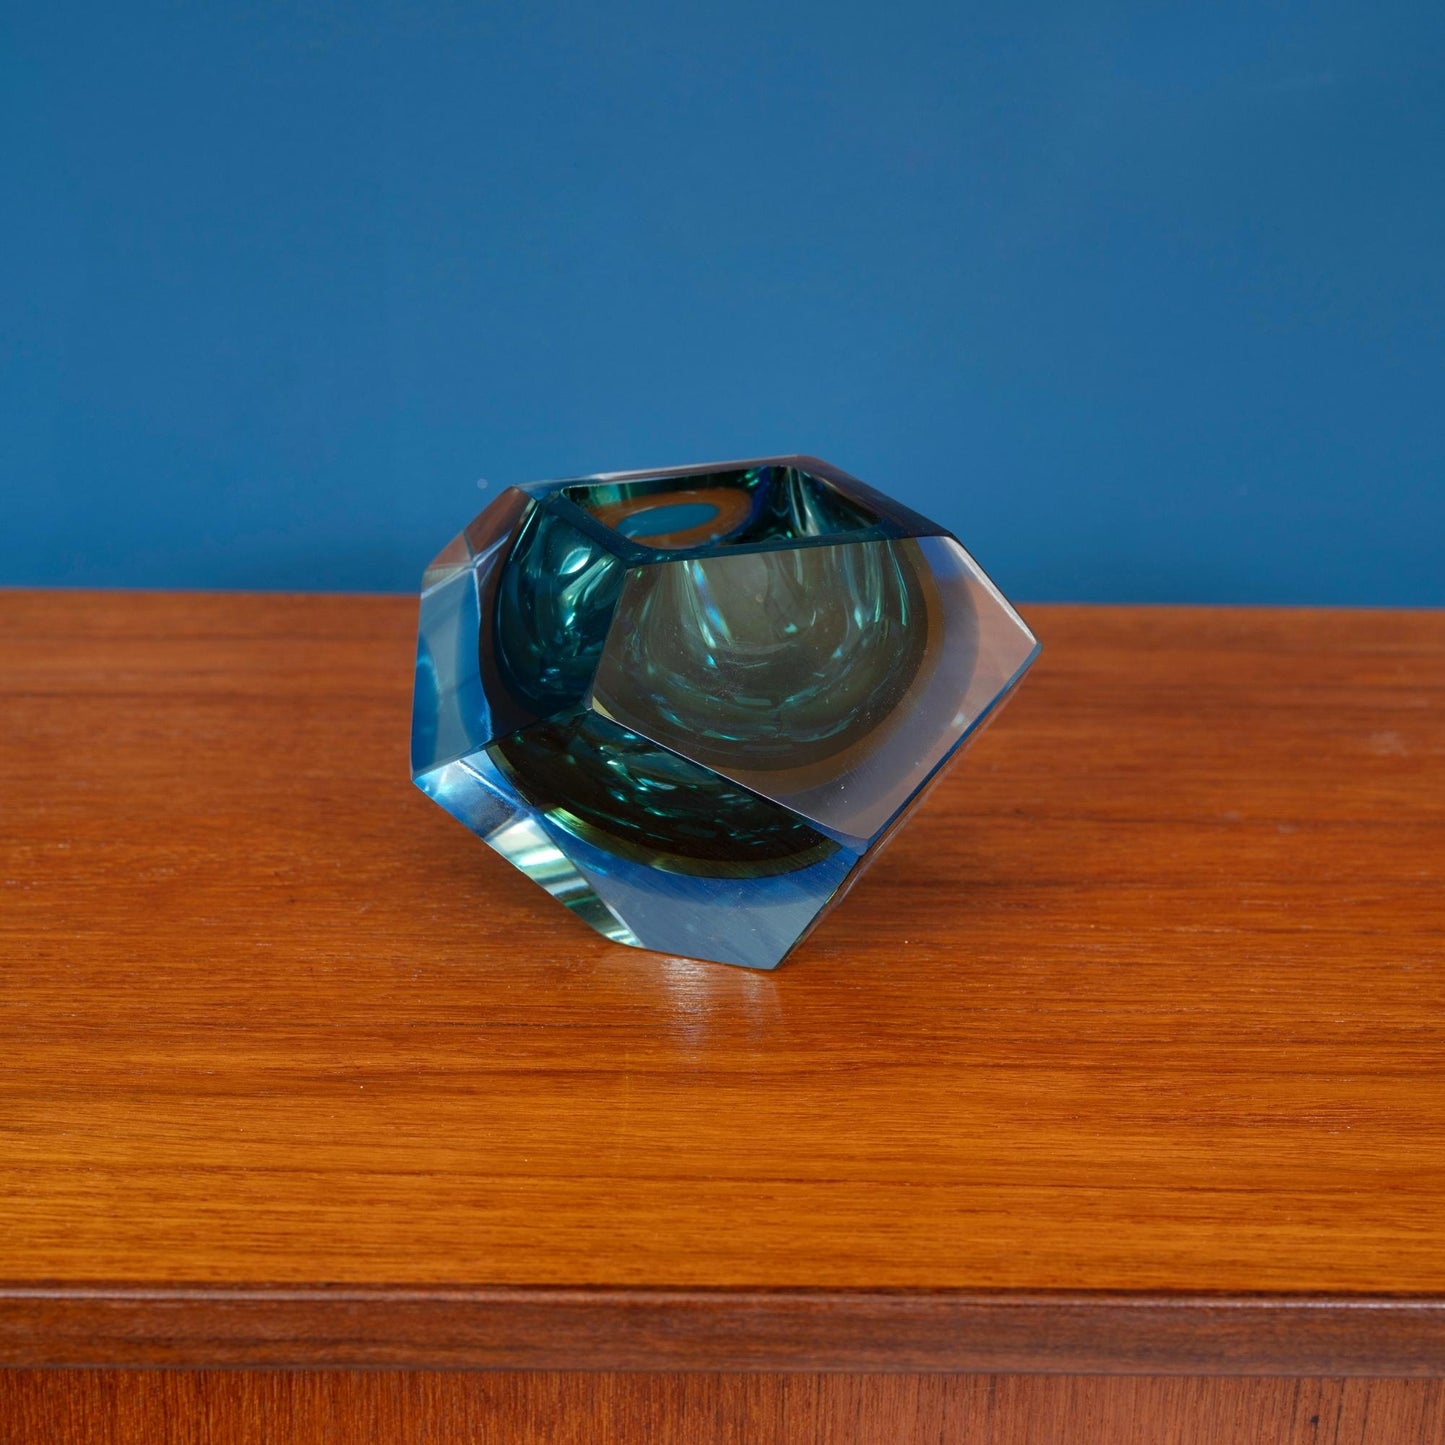 Posacenere in vetro sommerso di Murano sfaccettato, con interno di colore verde e blu.